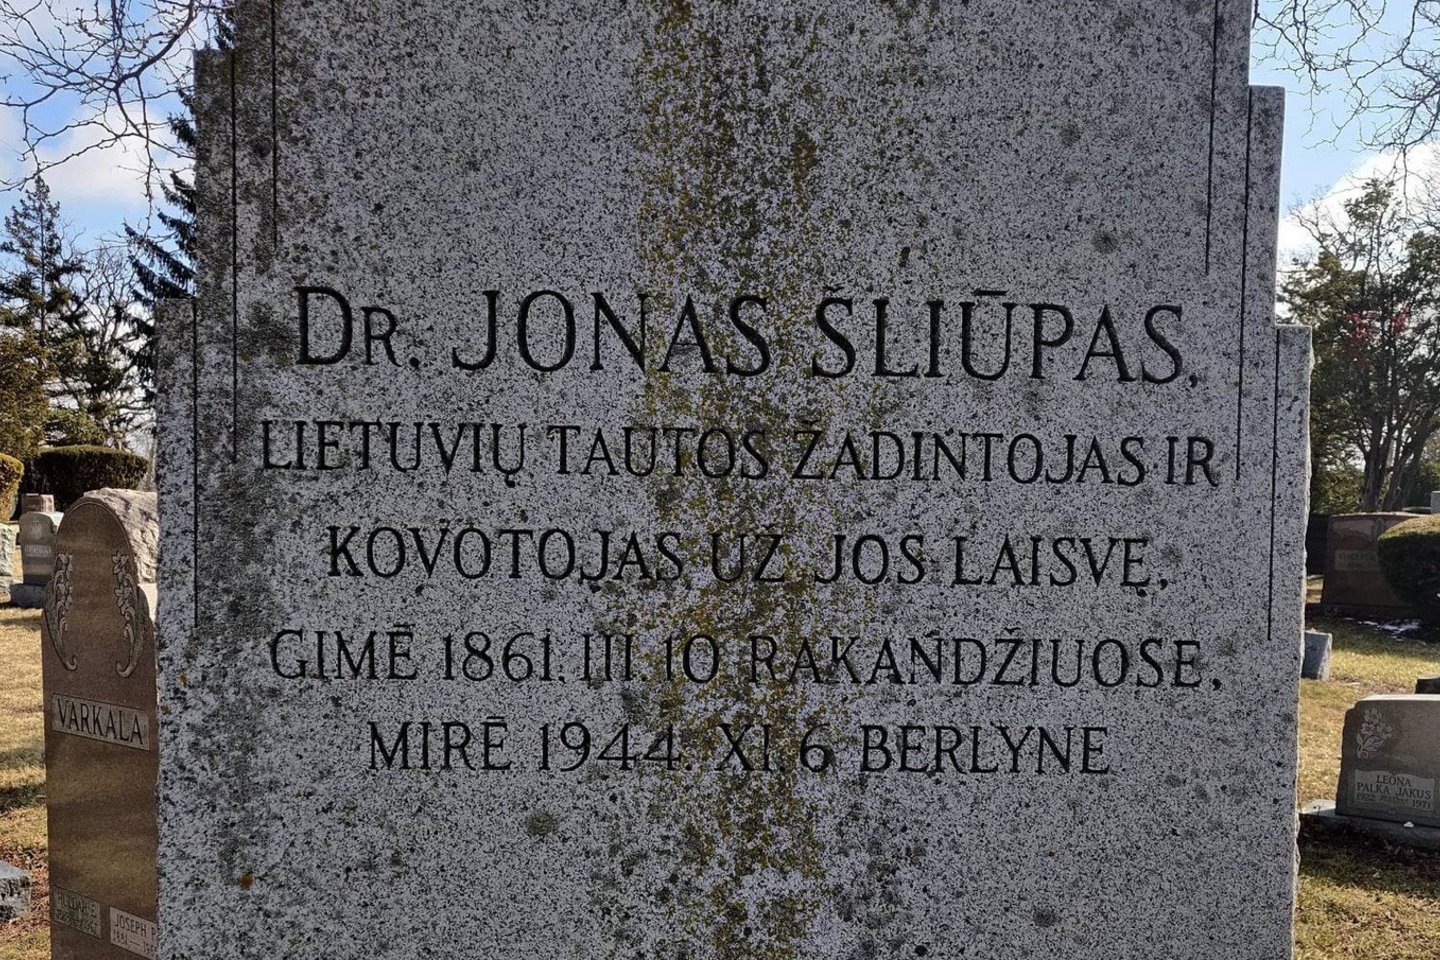  J.Šliūpas laisvės idėjas skleidė Amerikoje ir Lietuvoje.<br> E.Lukoševičiaus nuotr.